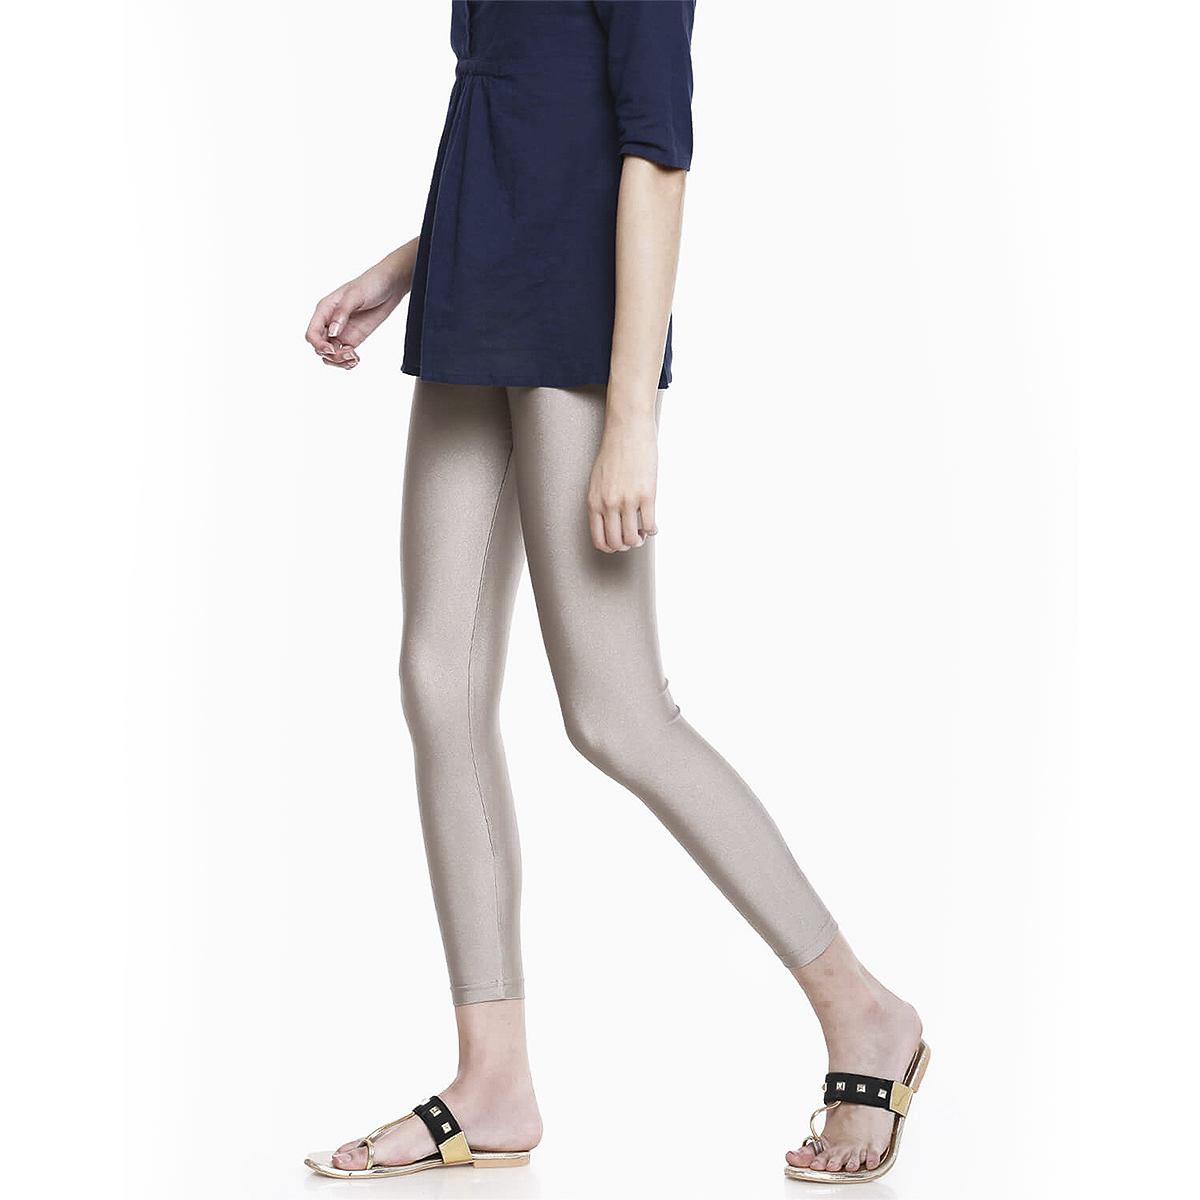 Buy Go Colors Women Ankle Length Shimmer Legging - Copper Online